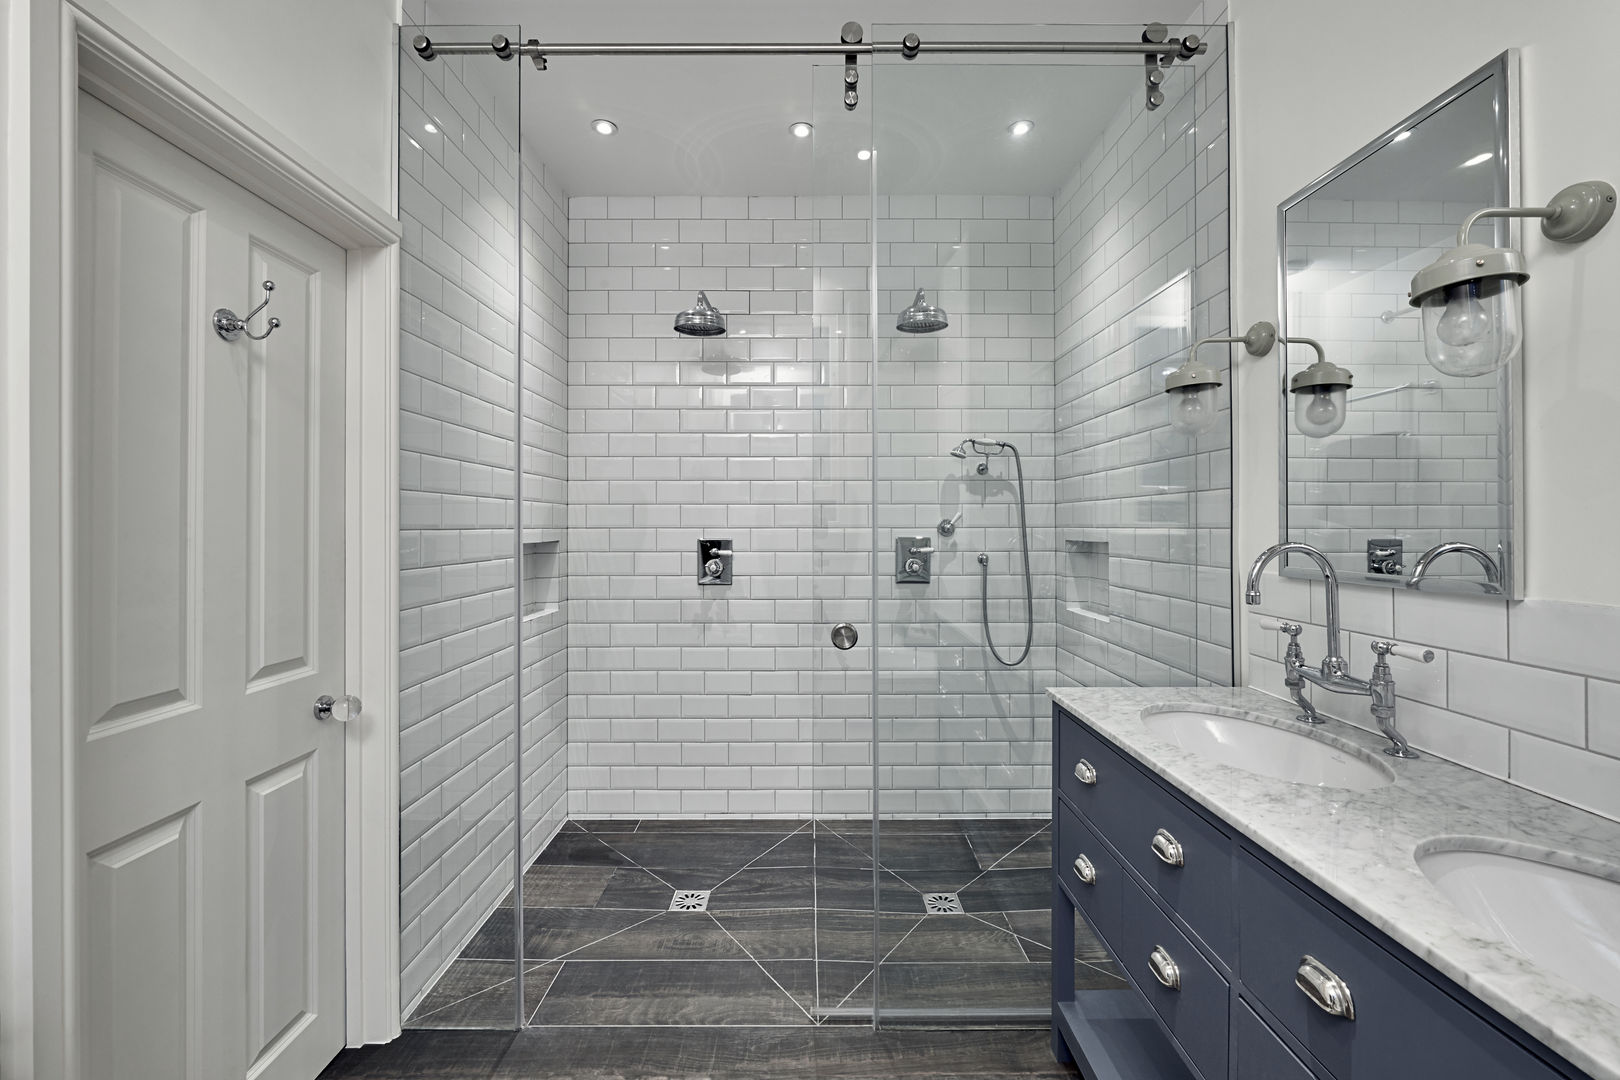 Double Shower Adventure In Architecture Baños de estilo clásico